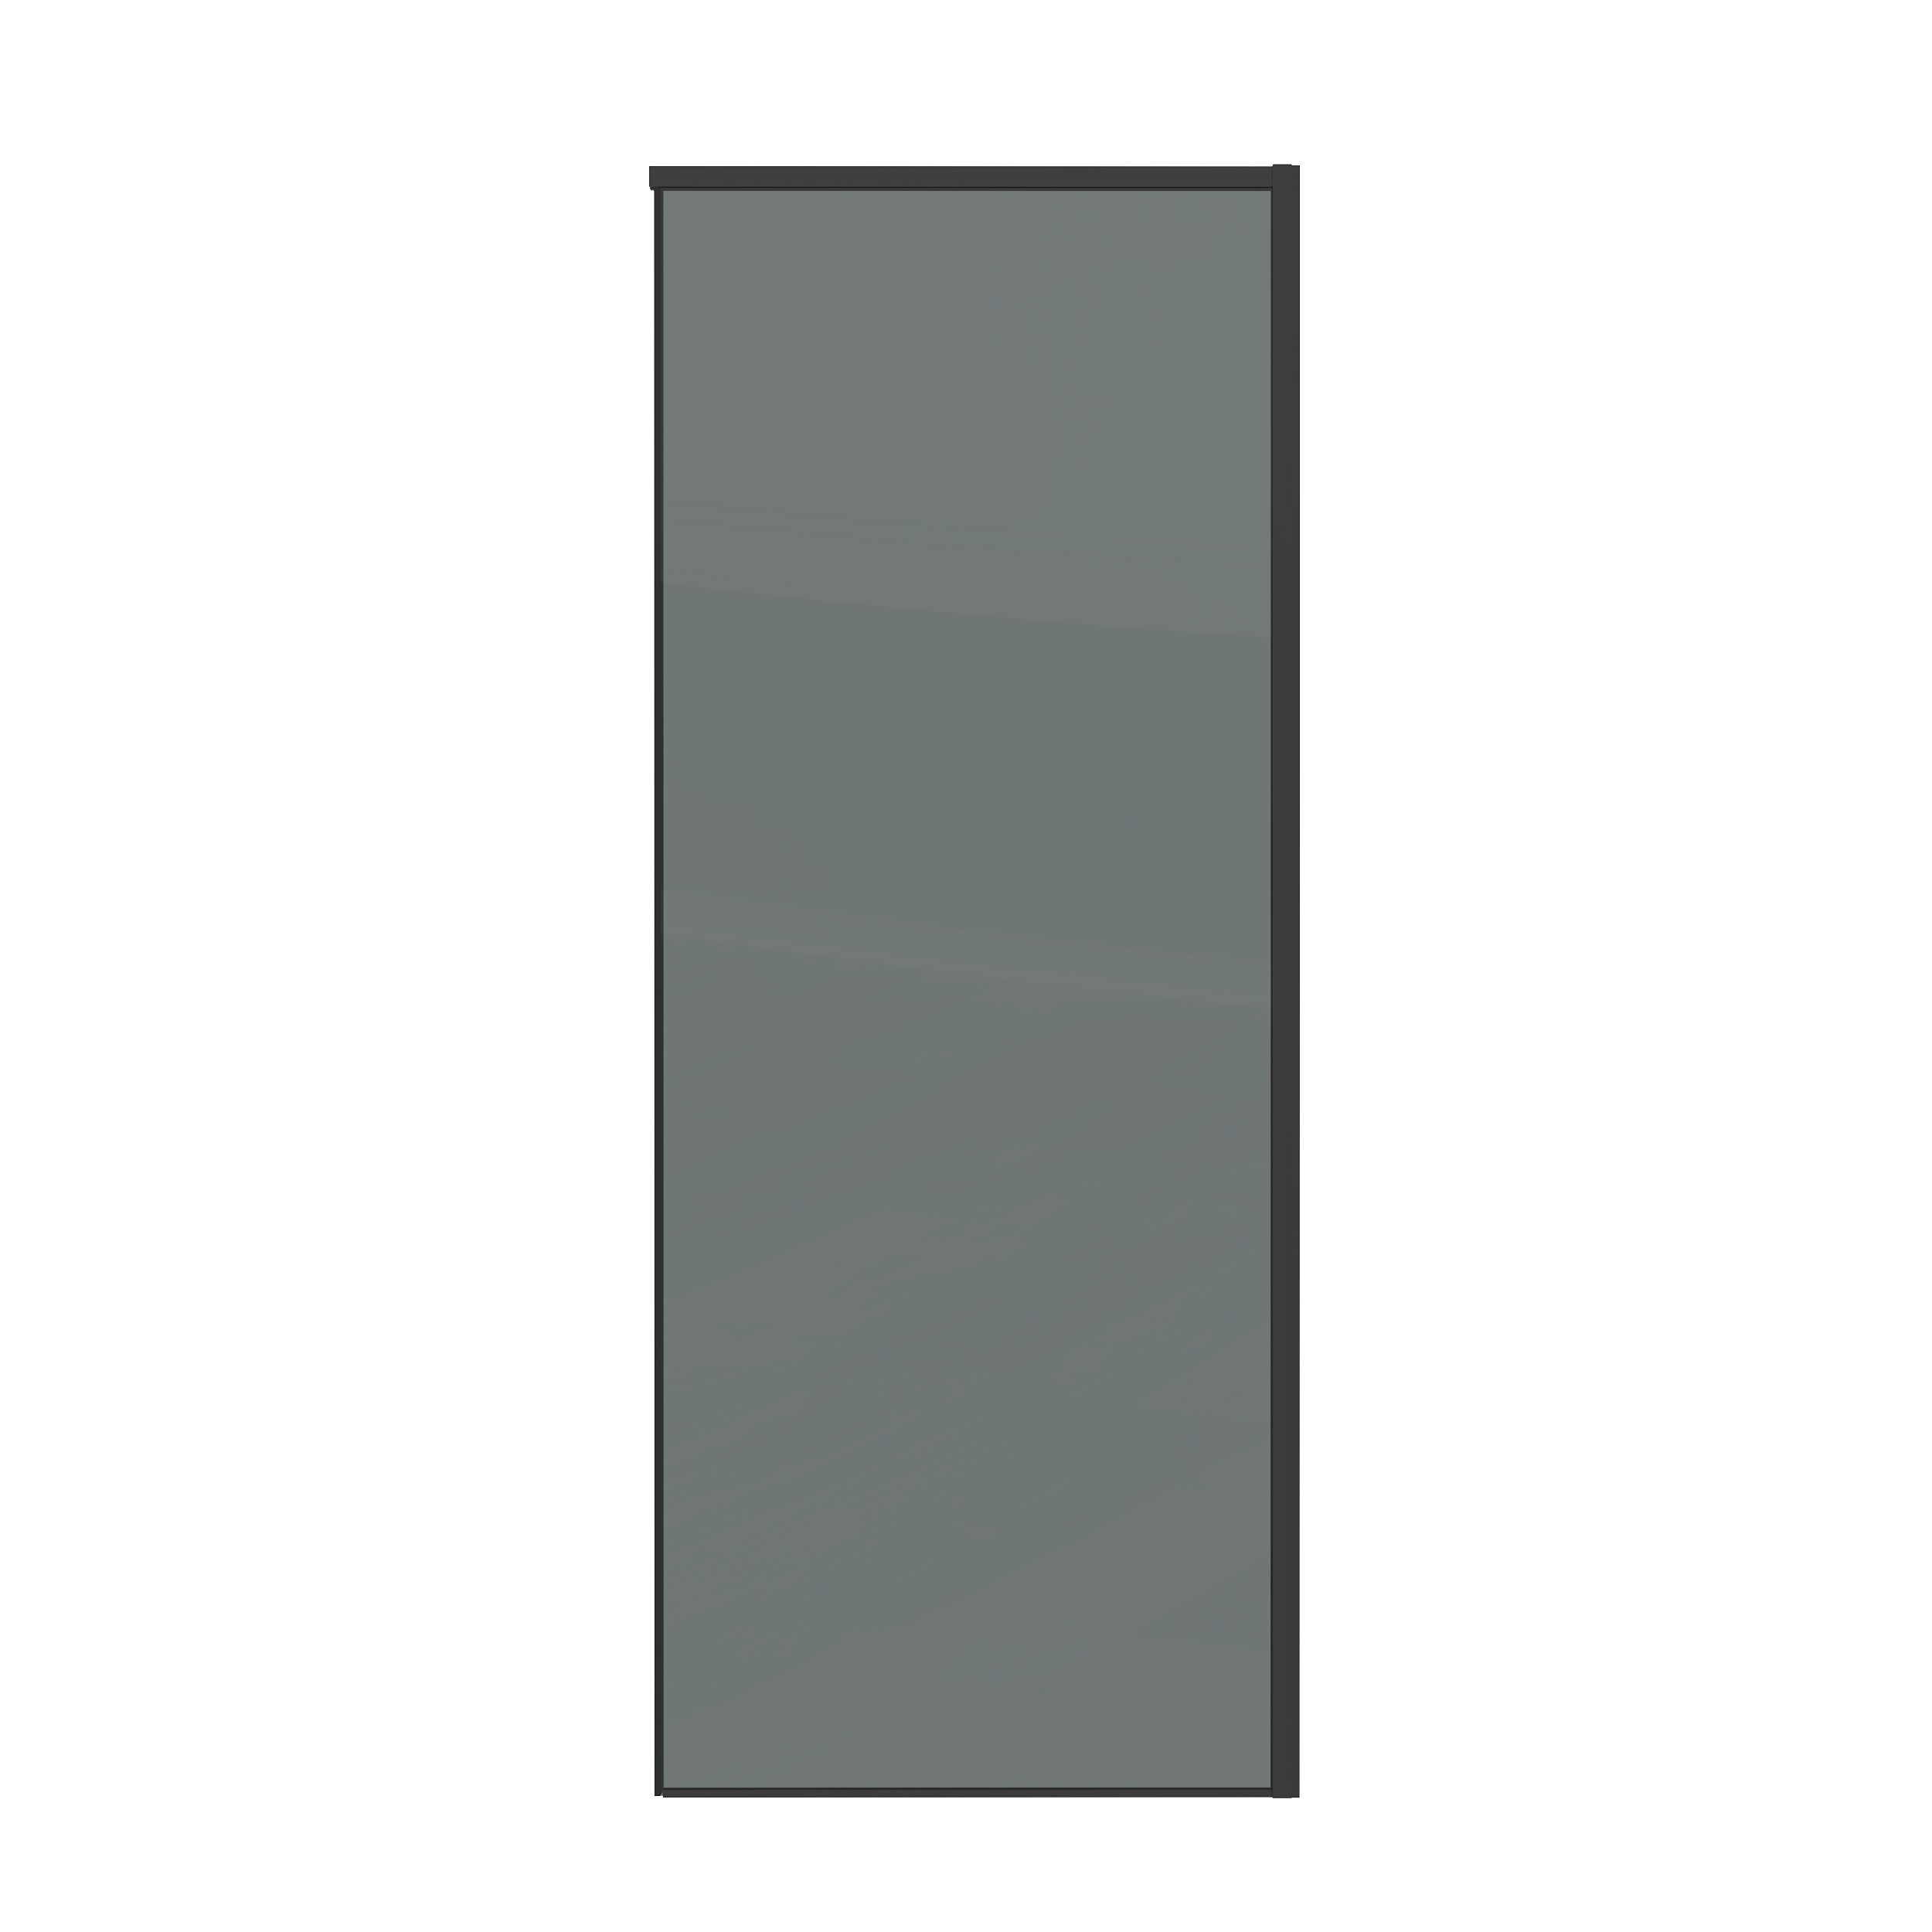 Боковая стенка Grossman Galaxy 70x195 200.K33.01.70.21.10 стекло тонированное, профиль черный матовый